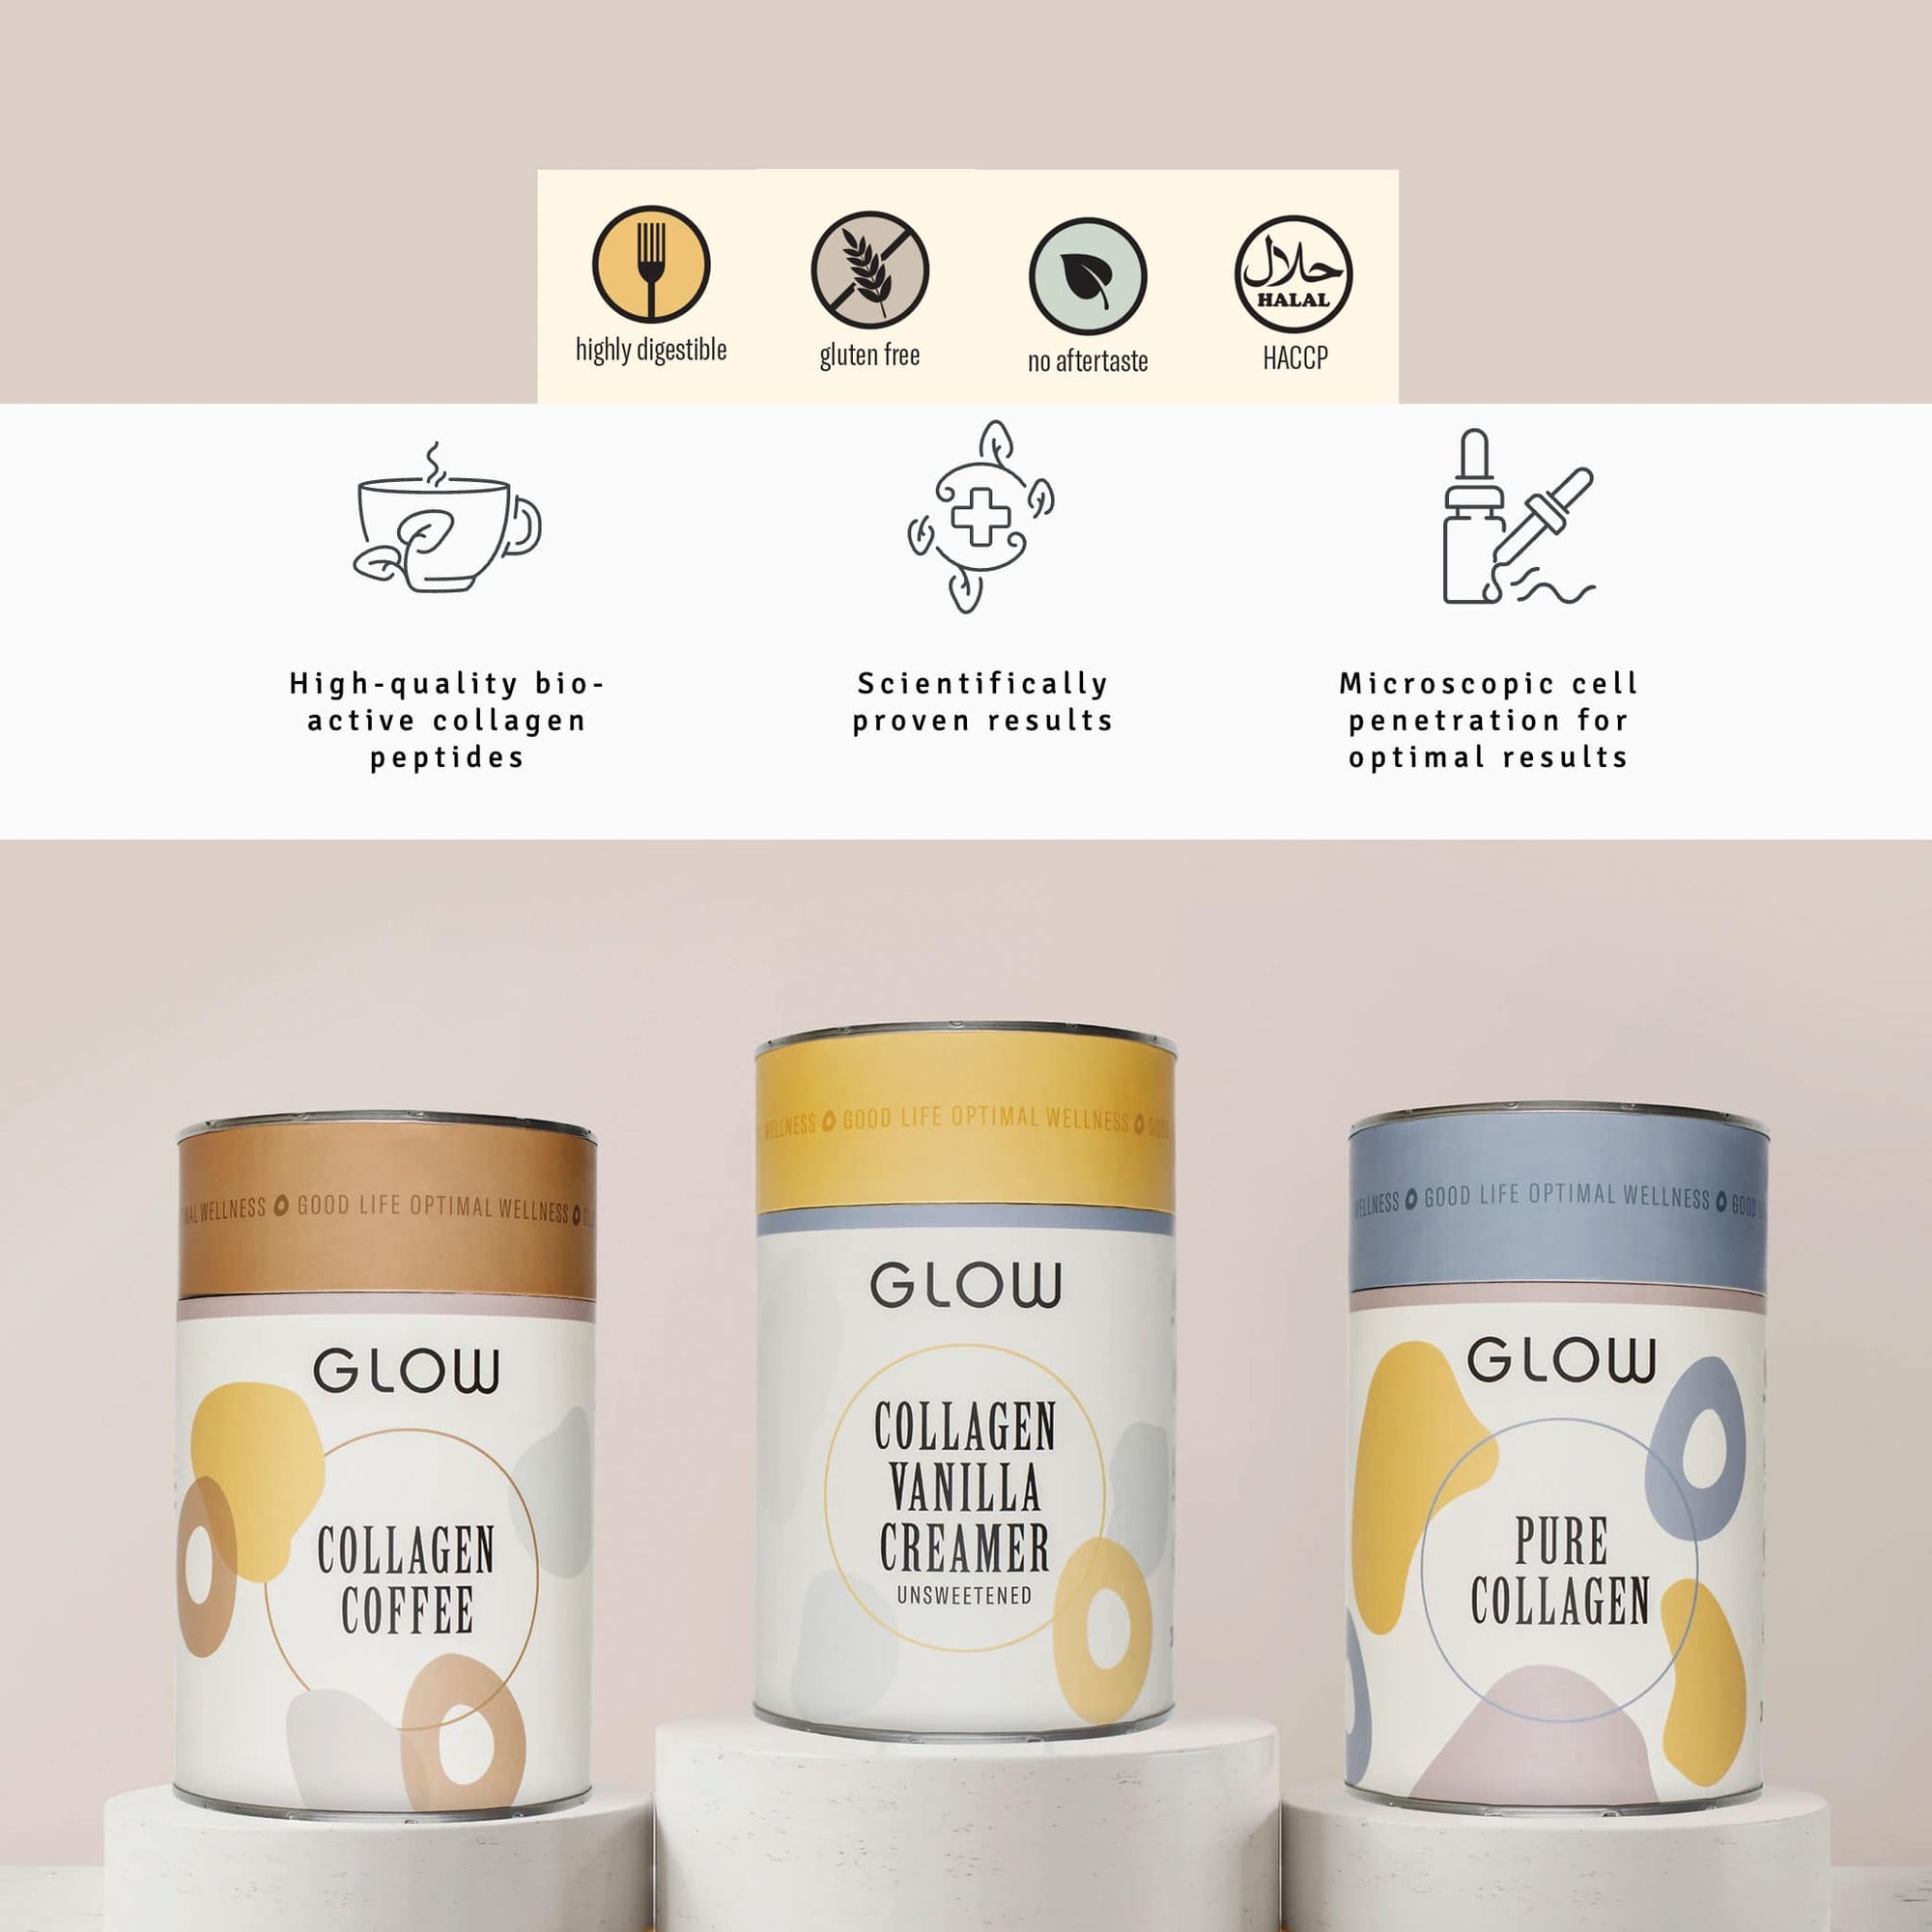 Glow Collagen Coffee - Shop Online | Retail Box